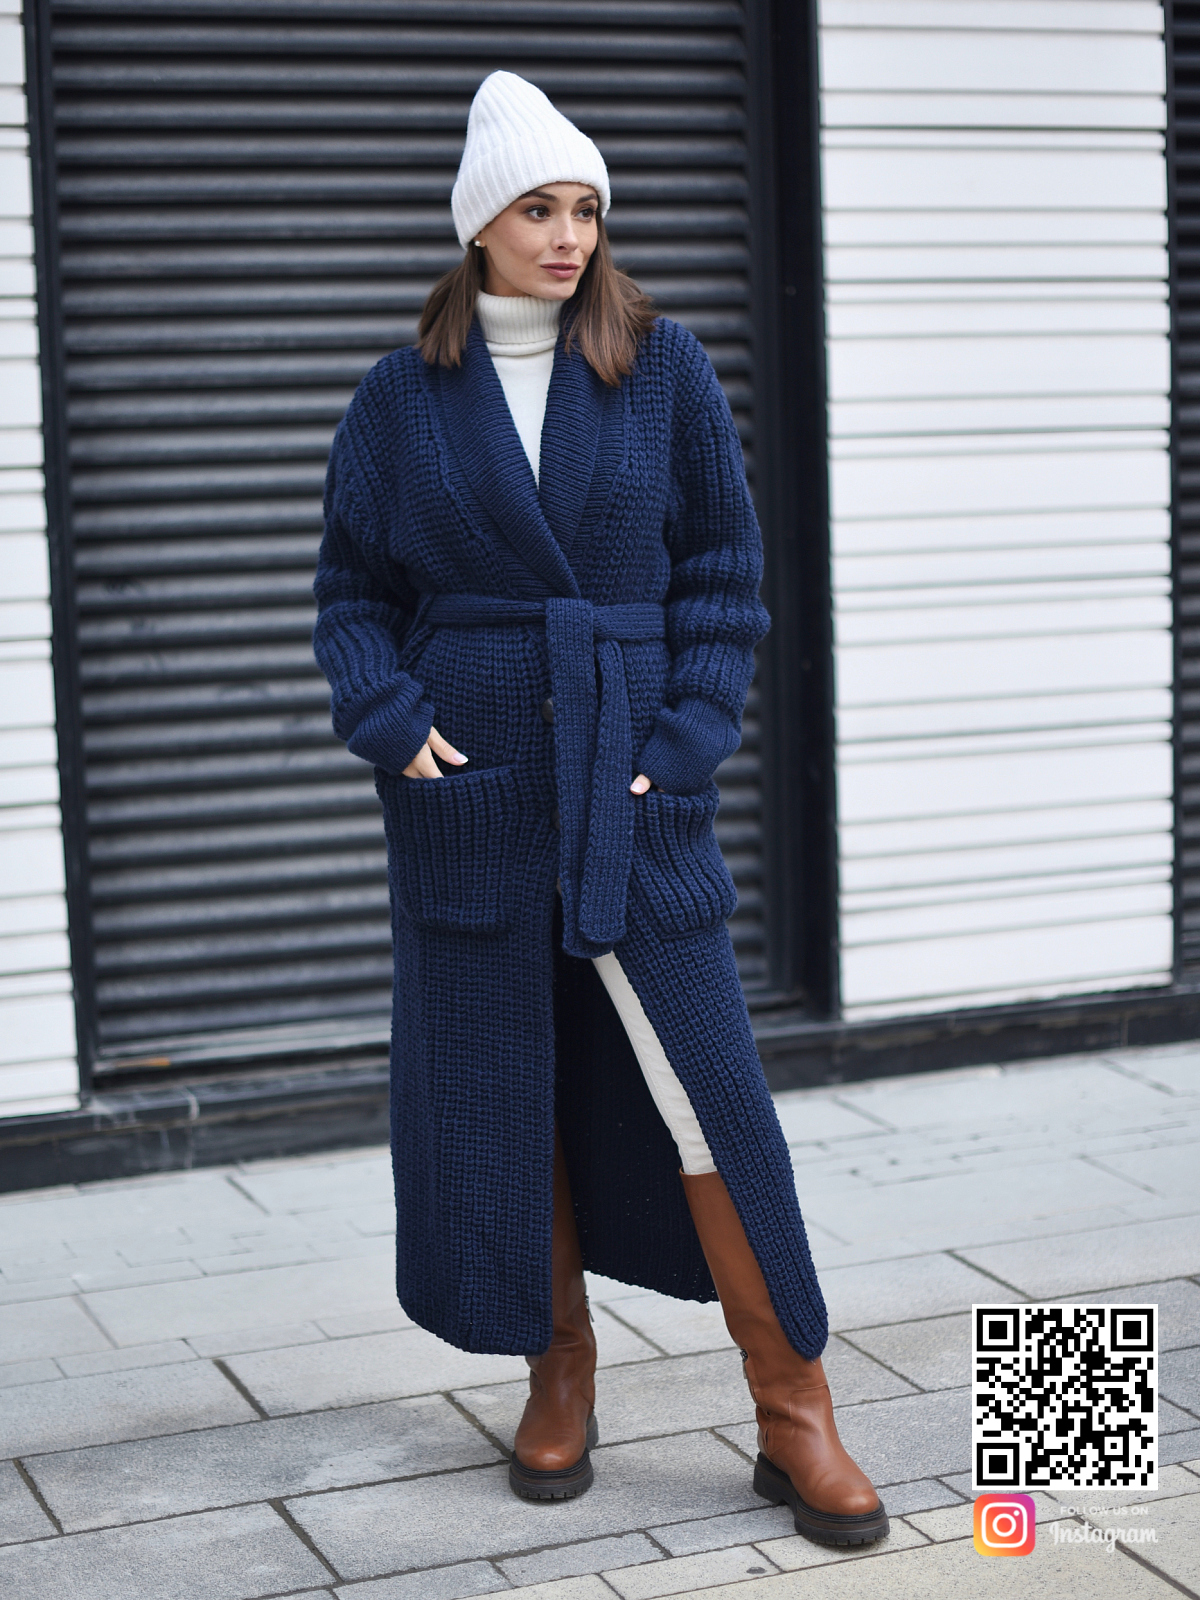 На четвертой фотографии кардиган синий женский с поясом в интернет-магазине вязаной одежды Shapar.